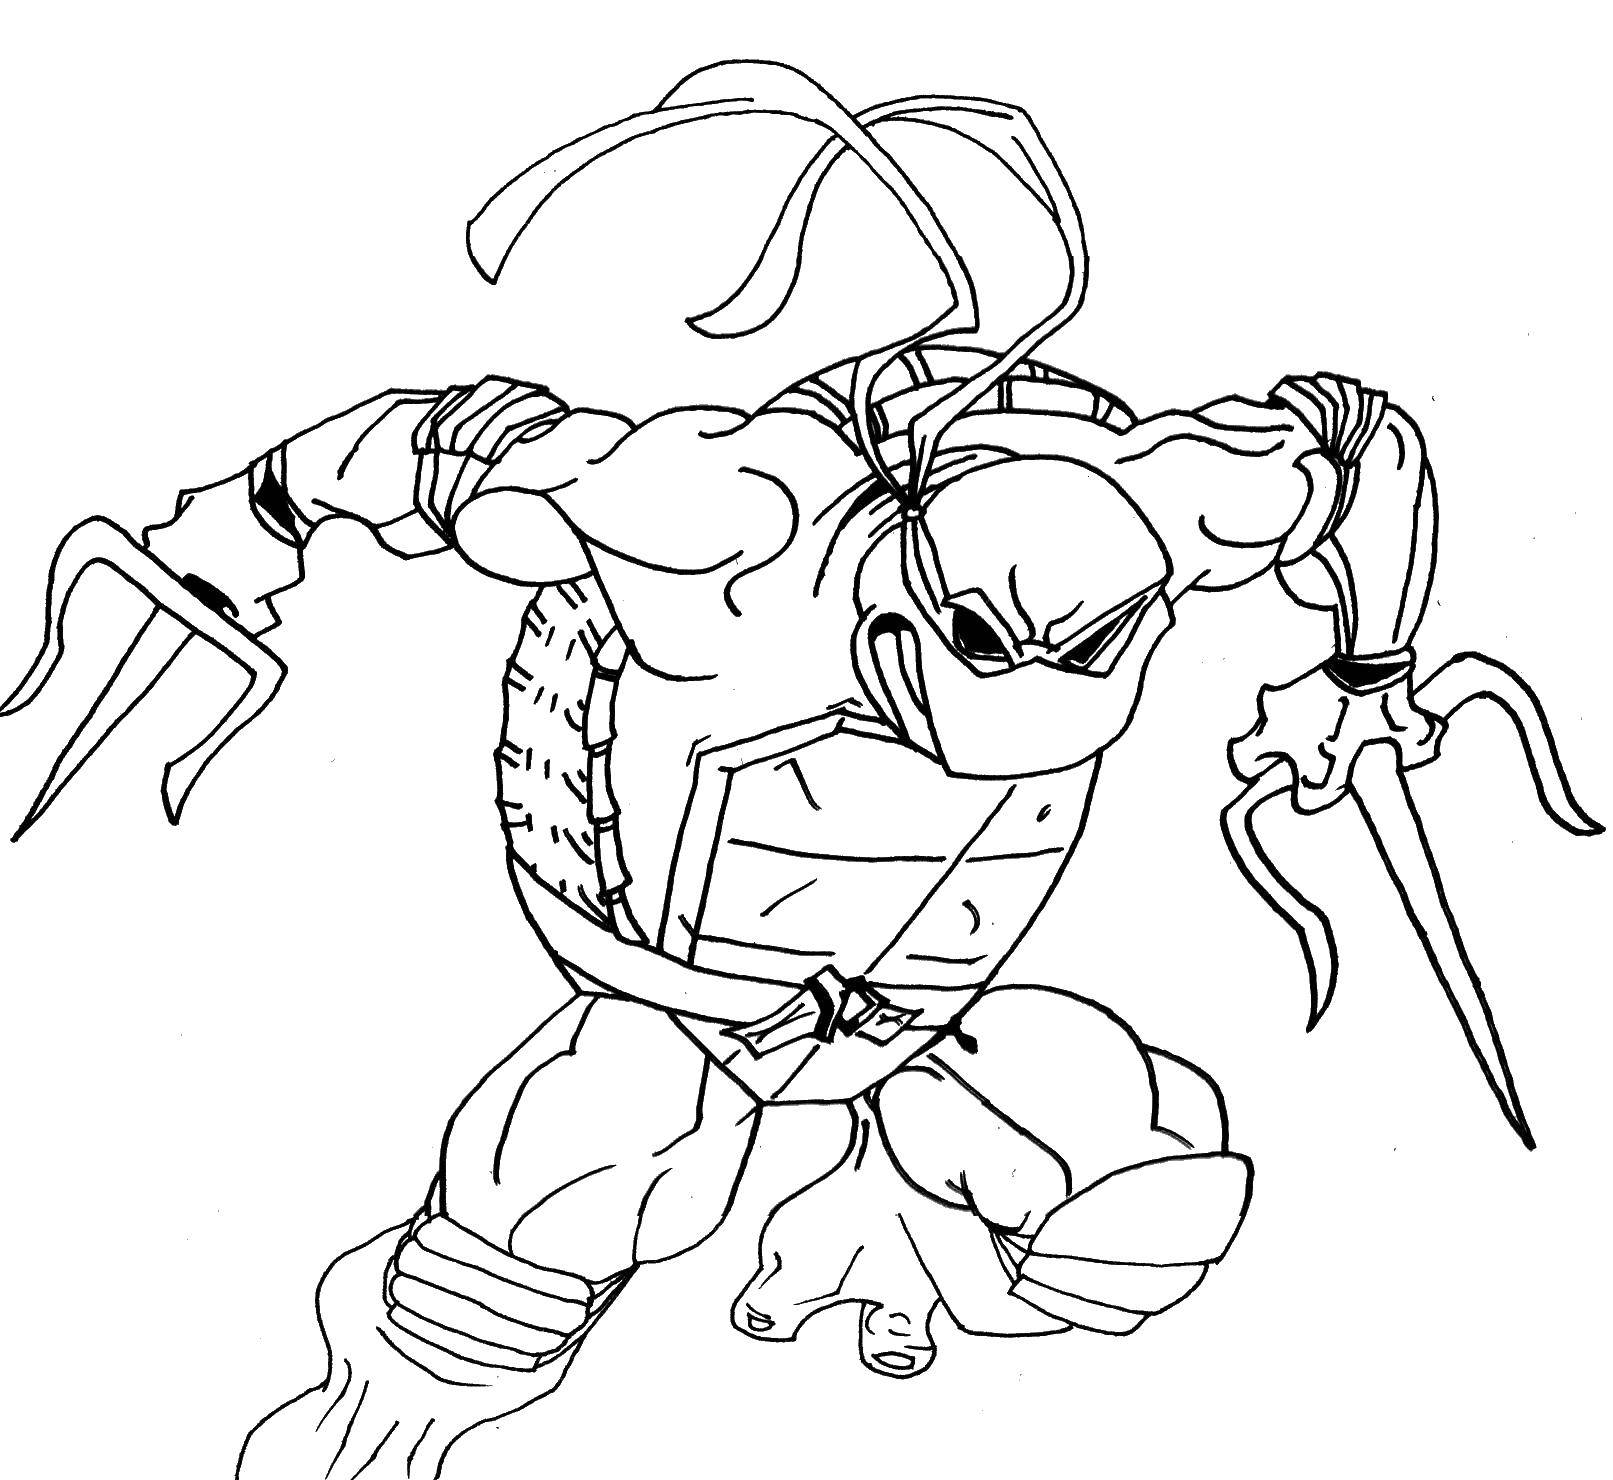 Название: Раскраска Рафаэль нападает с мечами. Категория: черепашки ниндзя. Теги: Комиксы, Черепашки Ниндзя.